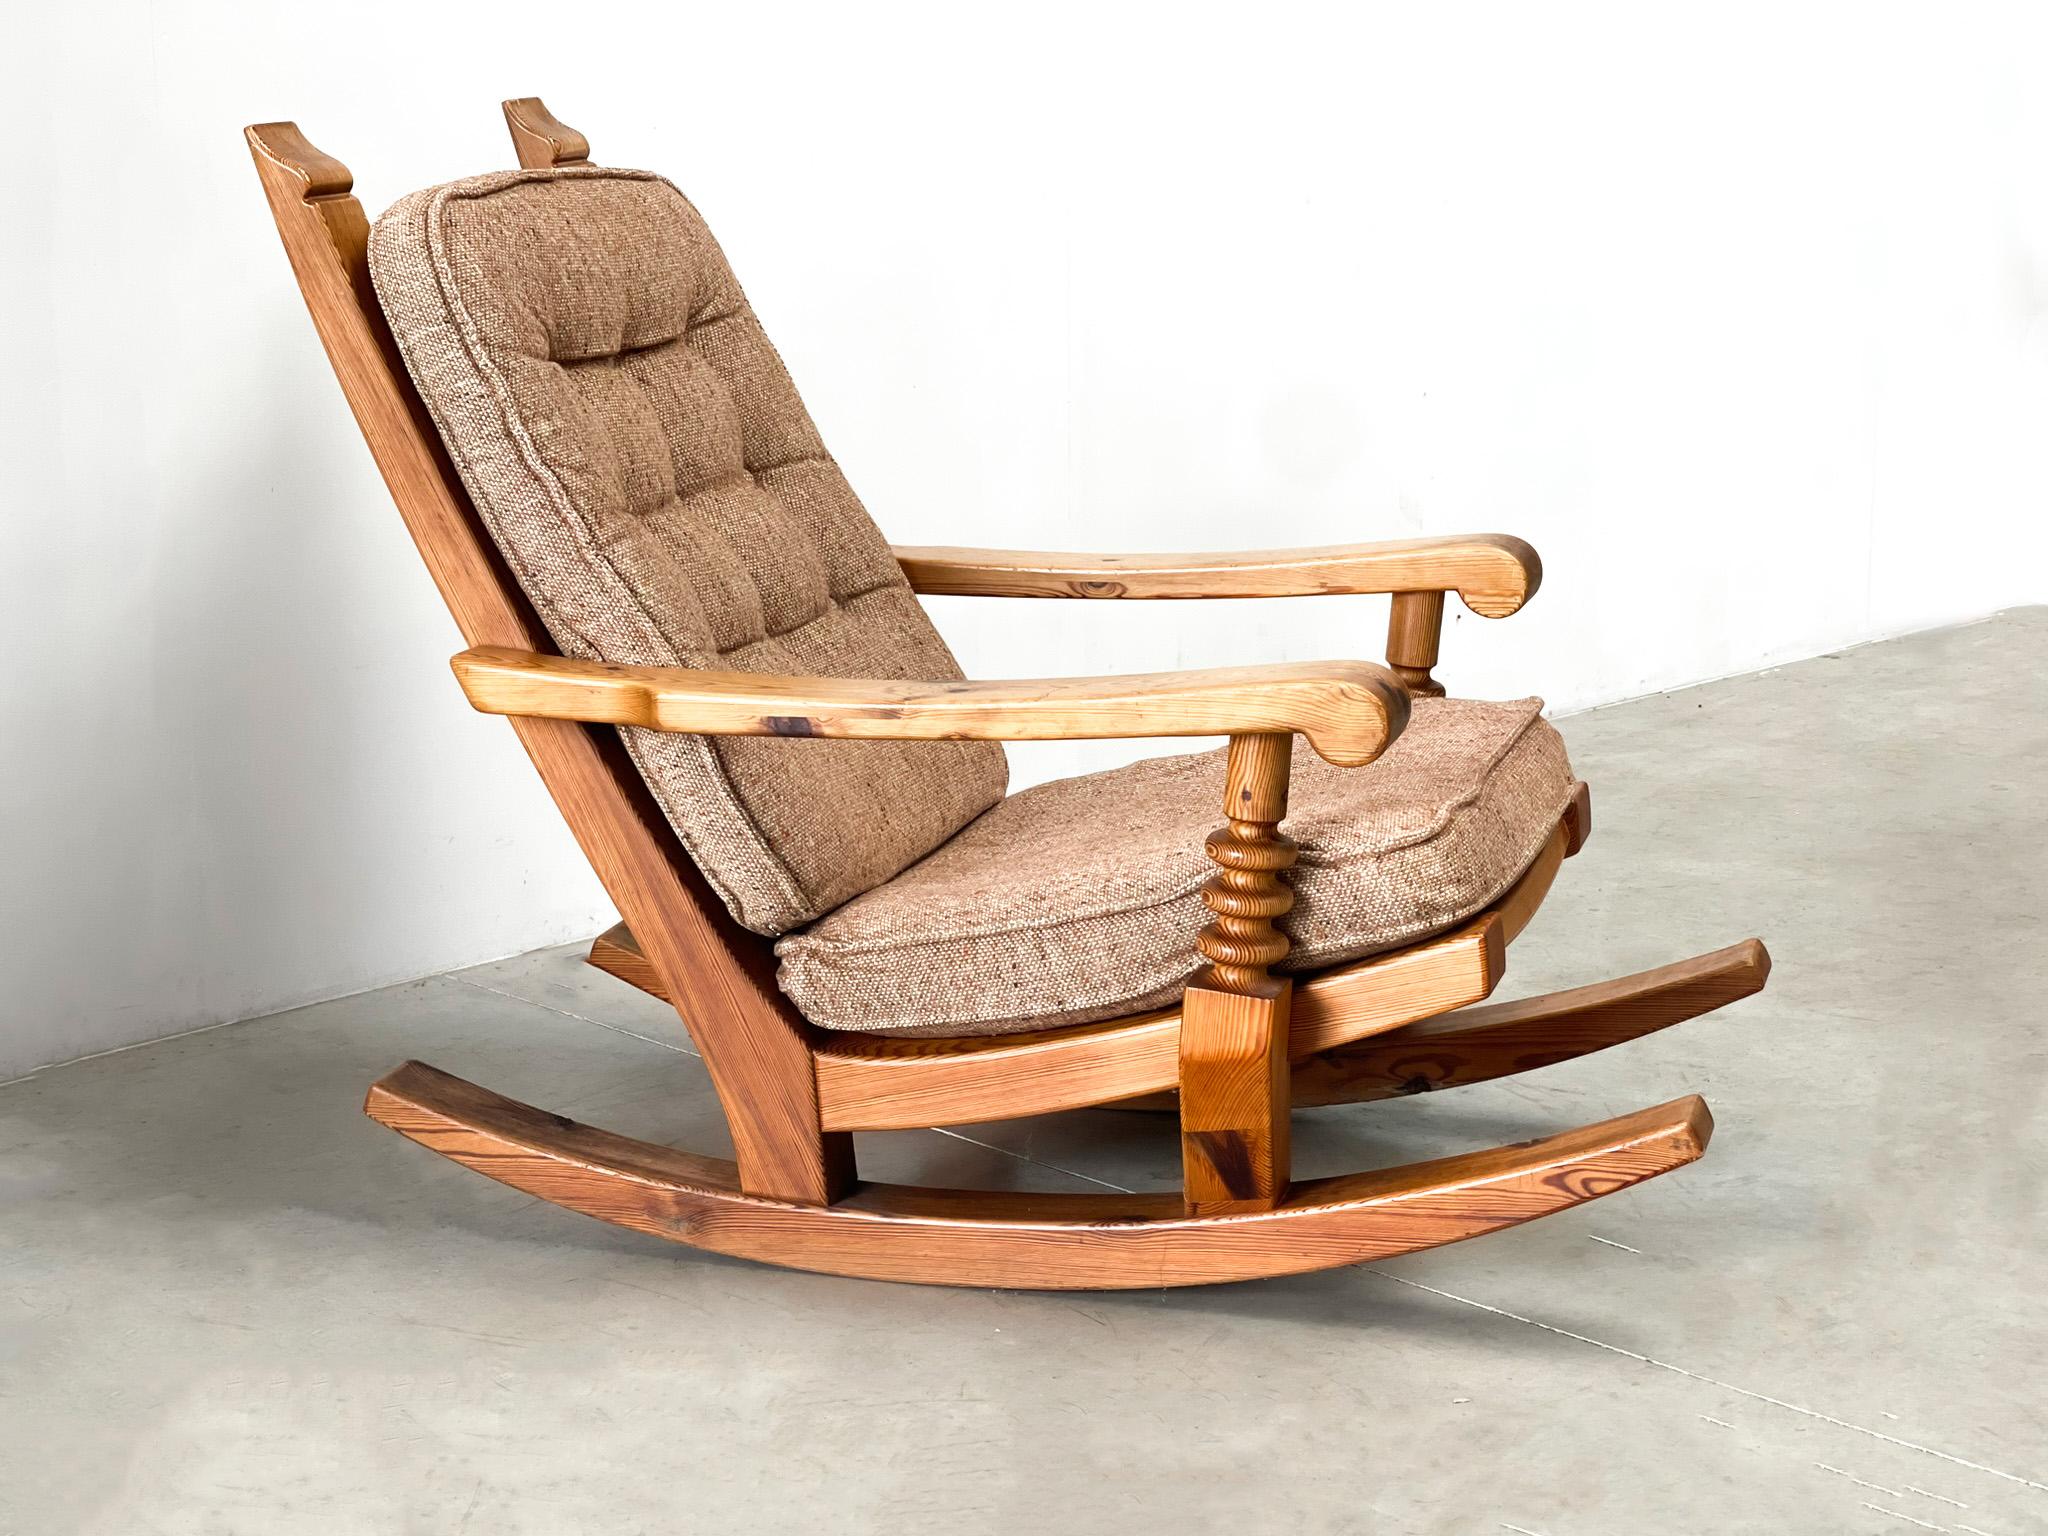 Très belle chaise à bascule d'Allemagne ! Le rocking-chair a probablement été fabriqué dans une petite usine en Allemagne. Il s'agit d'un très bon exemple de design lourd, solide et intemporel. Cette chaise a été professionnellement remise à neuf et